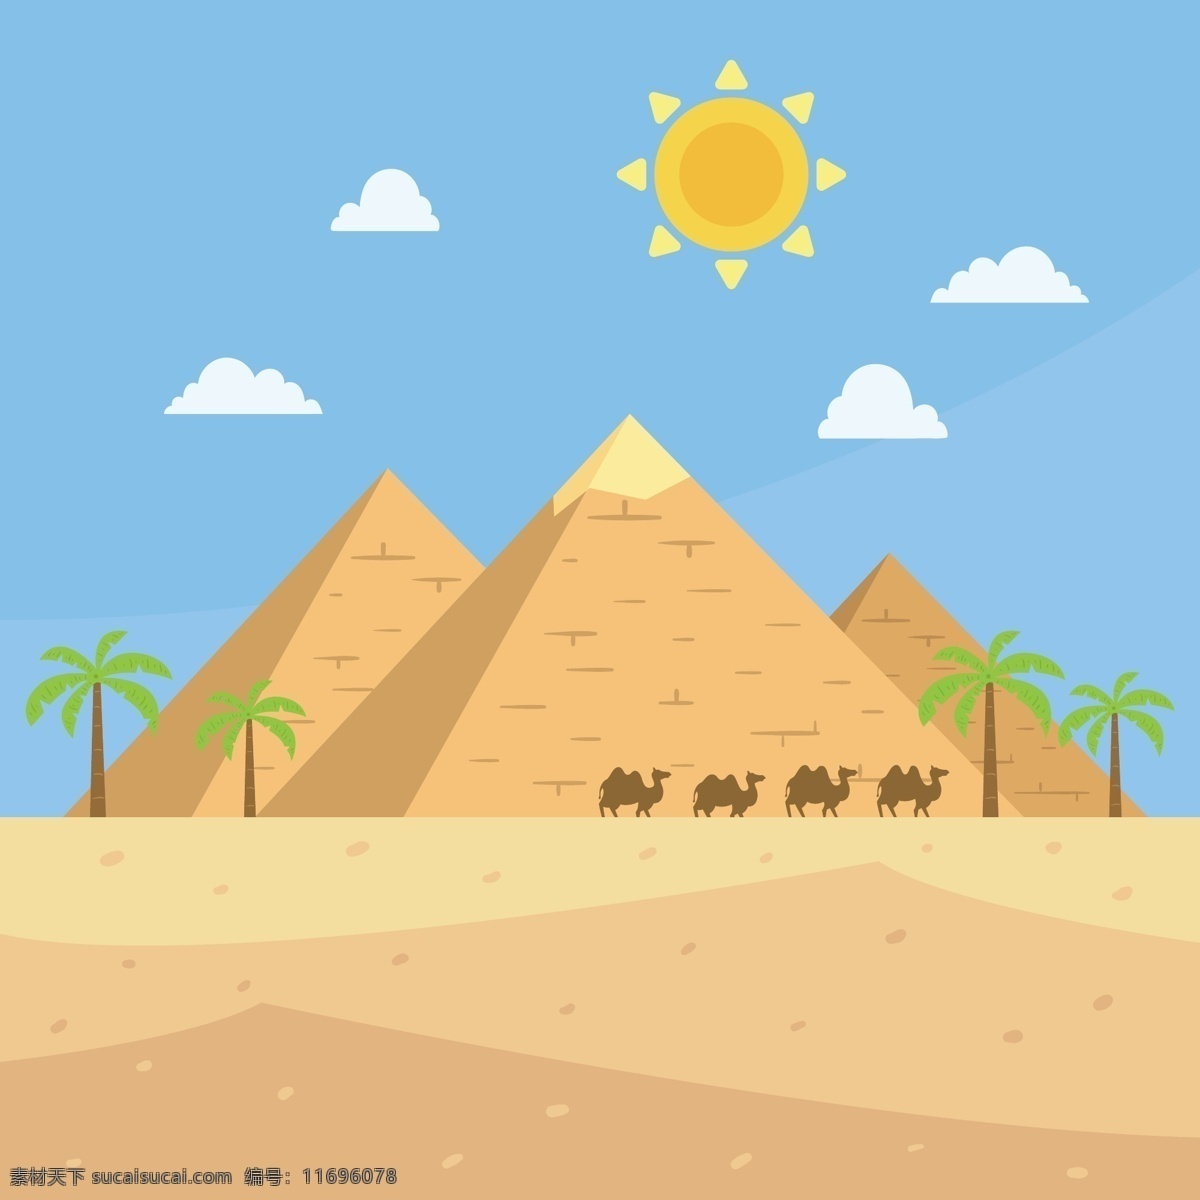 金字塔与骆驼 旅行 动物 太阳 景观 平面 建筑 平面设计 非洲 旅游 沙漠 埃及 历史 文化 砂 金字塔 阿拉伯 骆驼 古董 自然景观 人文景观